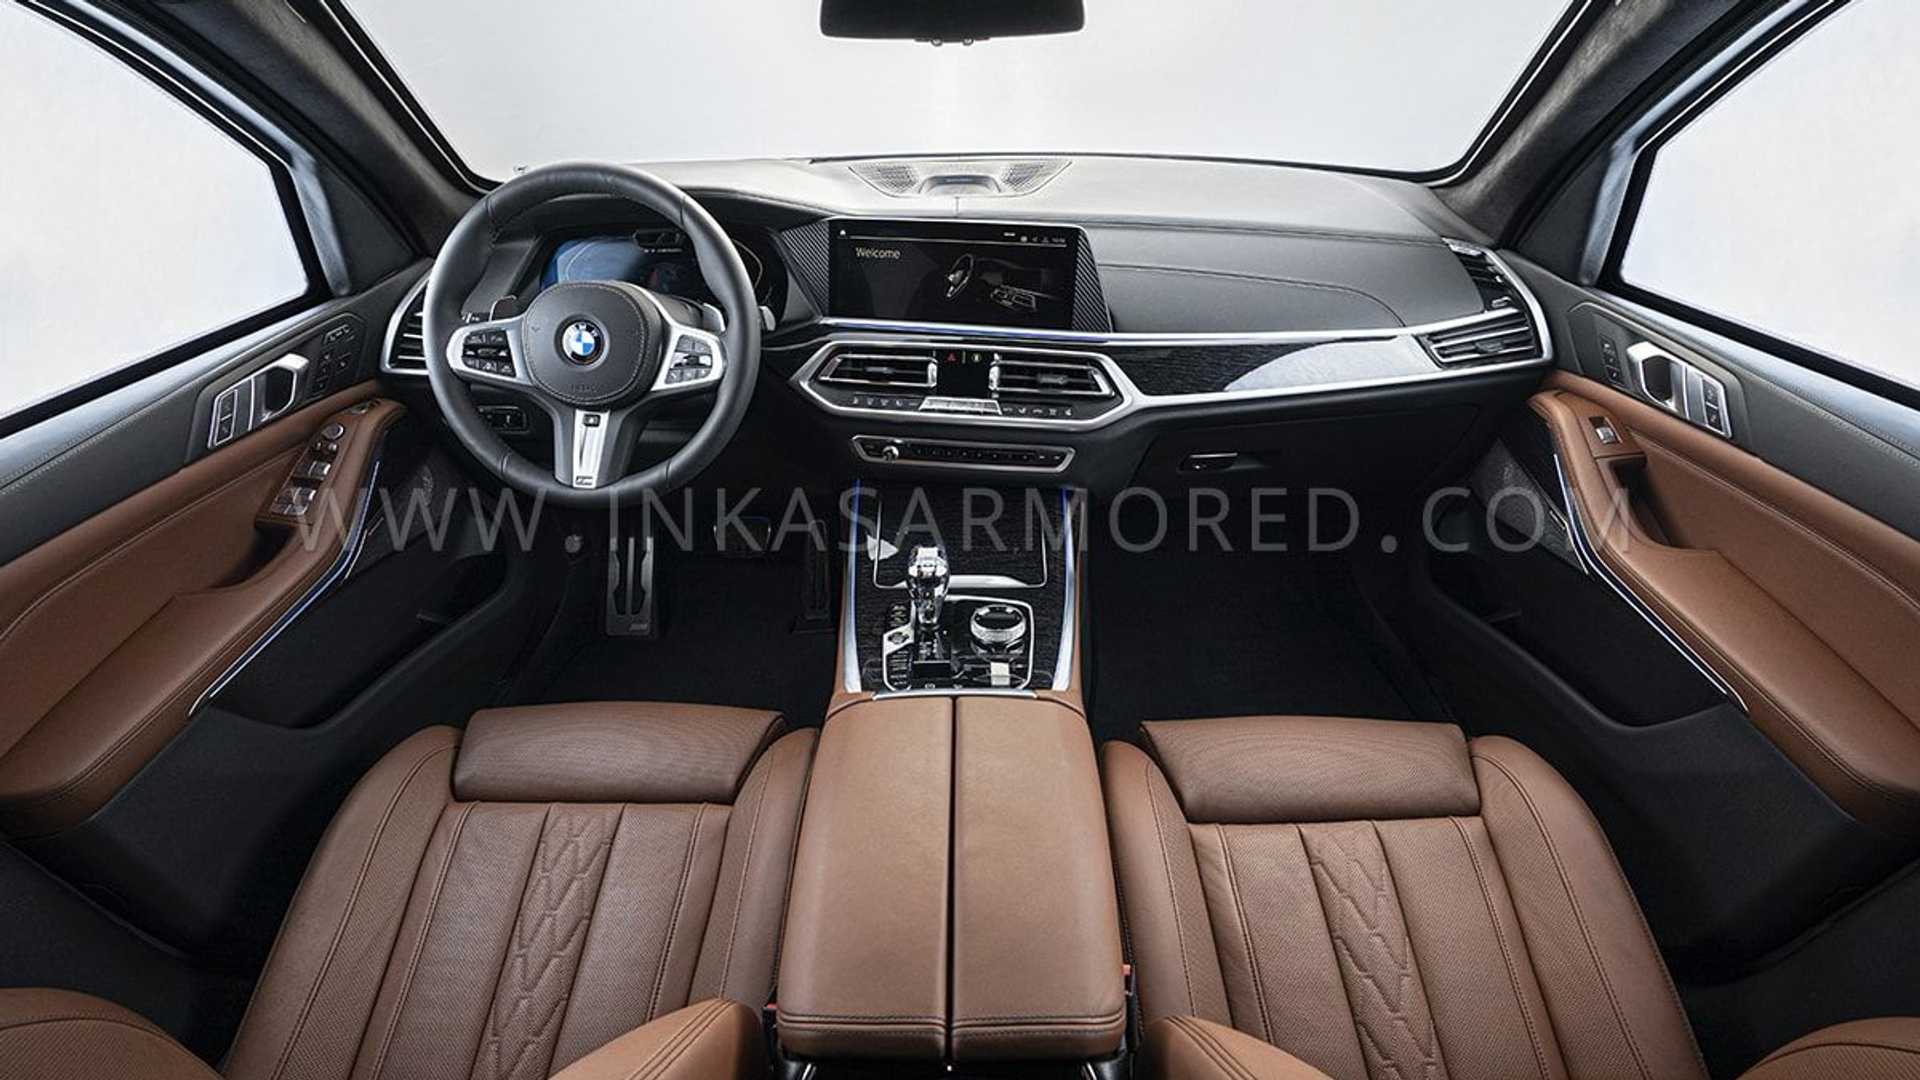 BMW X7 phiên bản bọc thép chống đạn inkas-armored-bmw-x7-interior.jpg